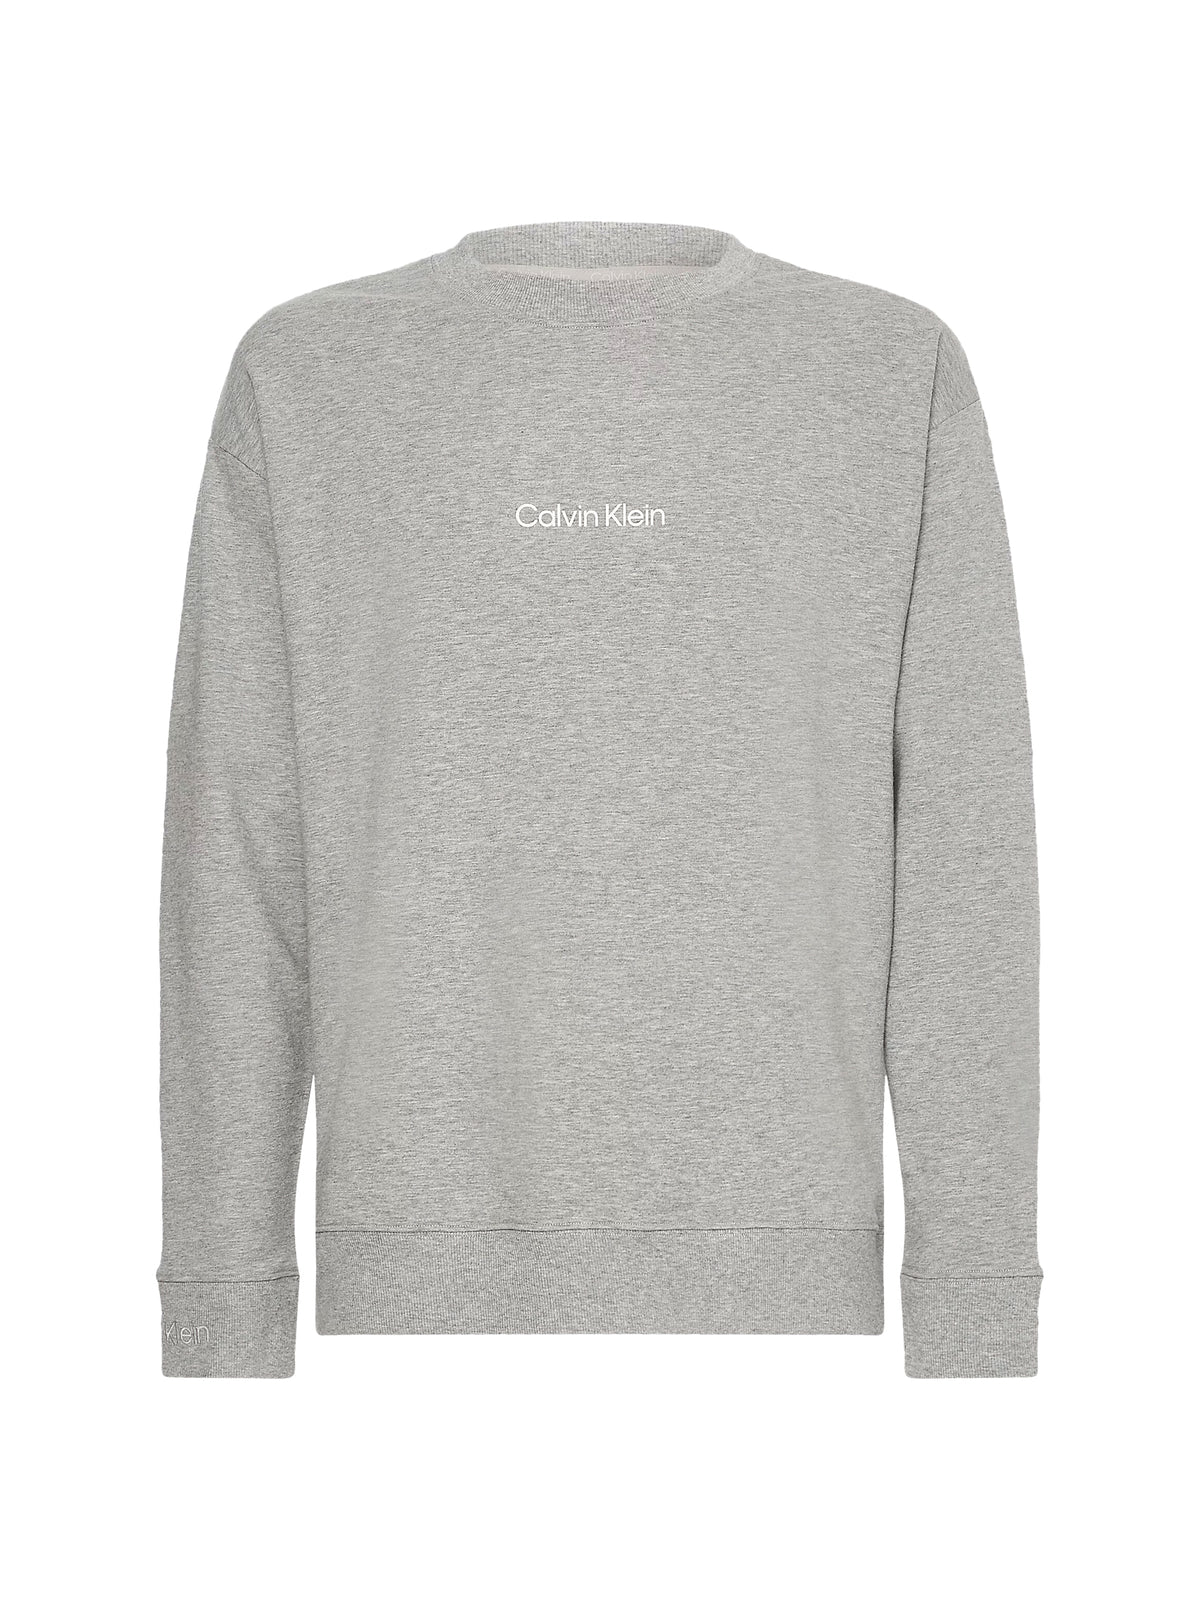 Calvin Klein Mens Lounge Crew Neck Sweatshirt - Modern Structure, 05, 000Nm2172E, Grey Heather